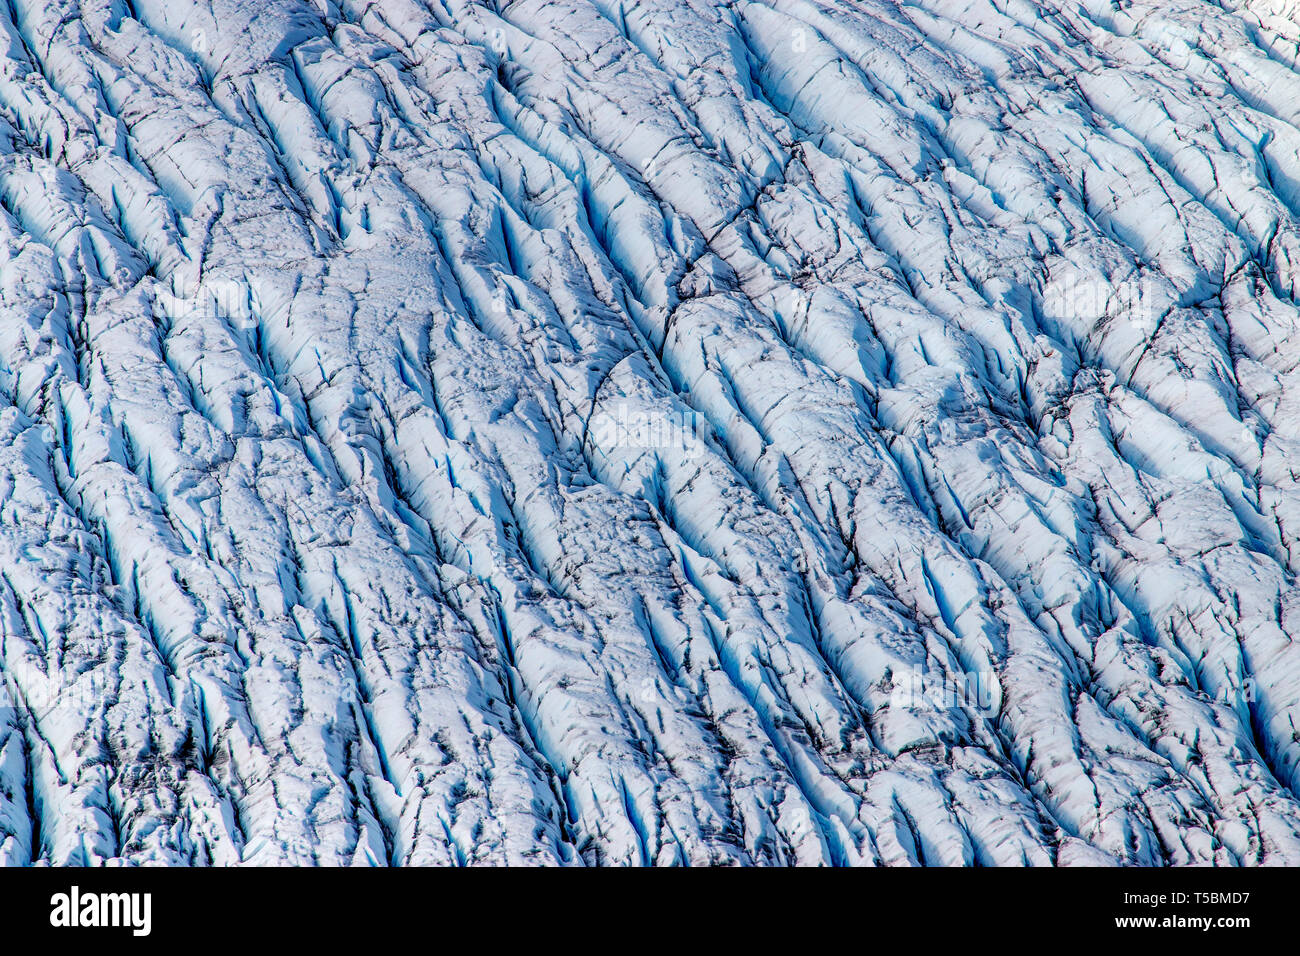 La Knik Glacier en Alaska. Manque de neige exposer les cendres retombées de la redoute à proximité de volcan, la réduction de l'effet albédo. Il y a des milliers de glaciers en Alaska, et au moins 616 d'entre eux sont nommés. Ensemble, ils sont en train de perdre 75 milliards de tonnes de glace chaque année en raison de la fonte. Ce chiffre est susceptible d'augmenter dans les années à venir. Mai 2015 a été la plus chaude en 91 ans. Banque D'Images